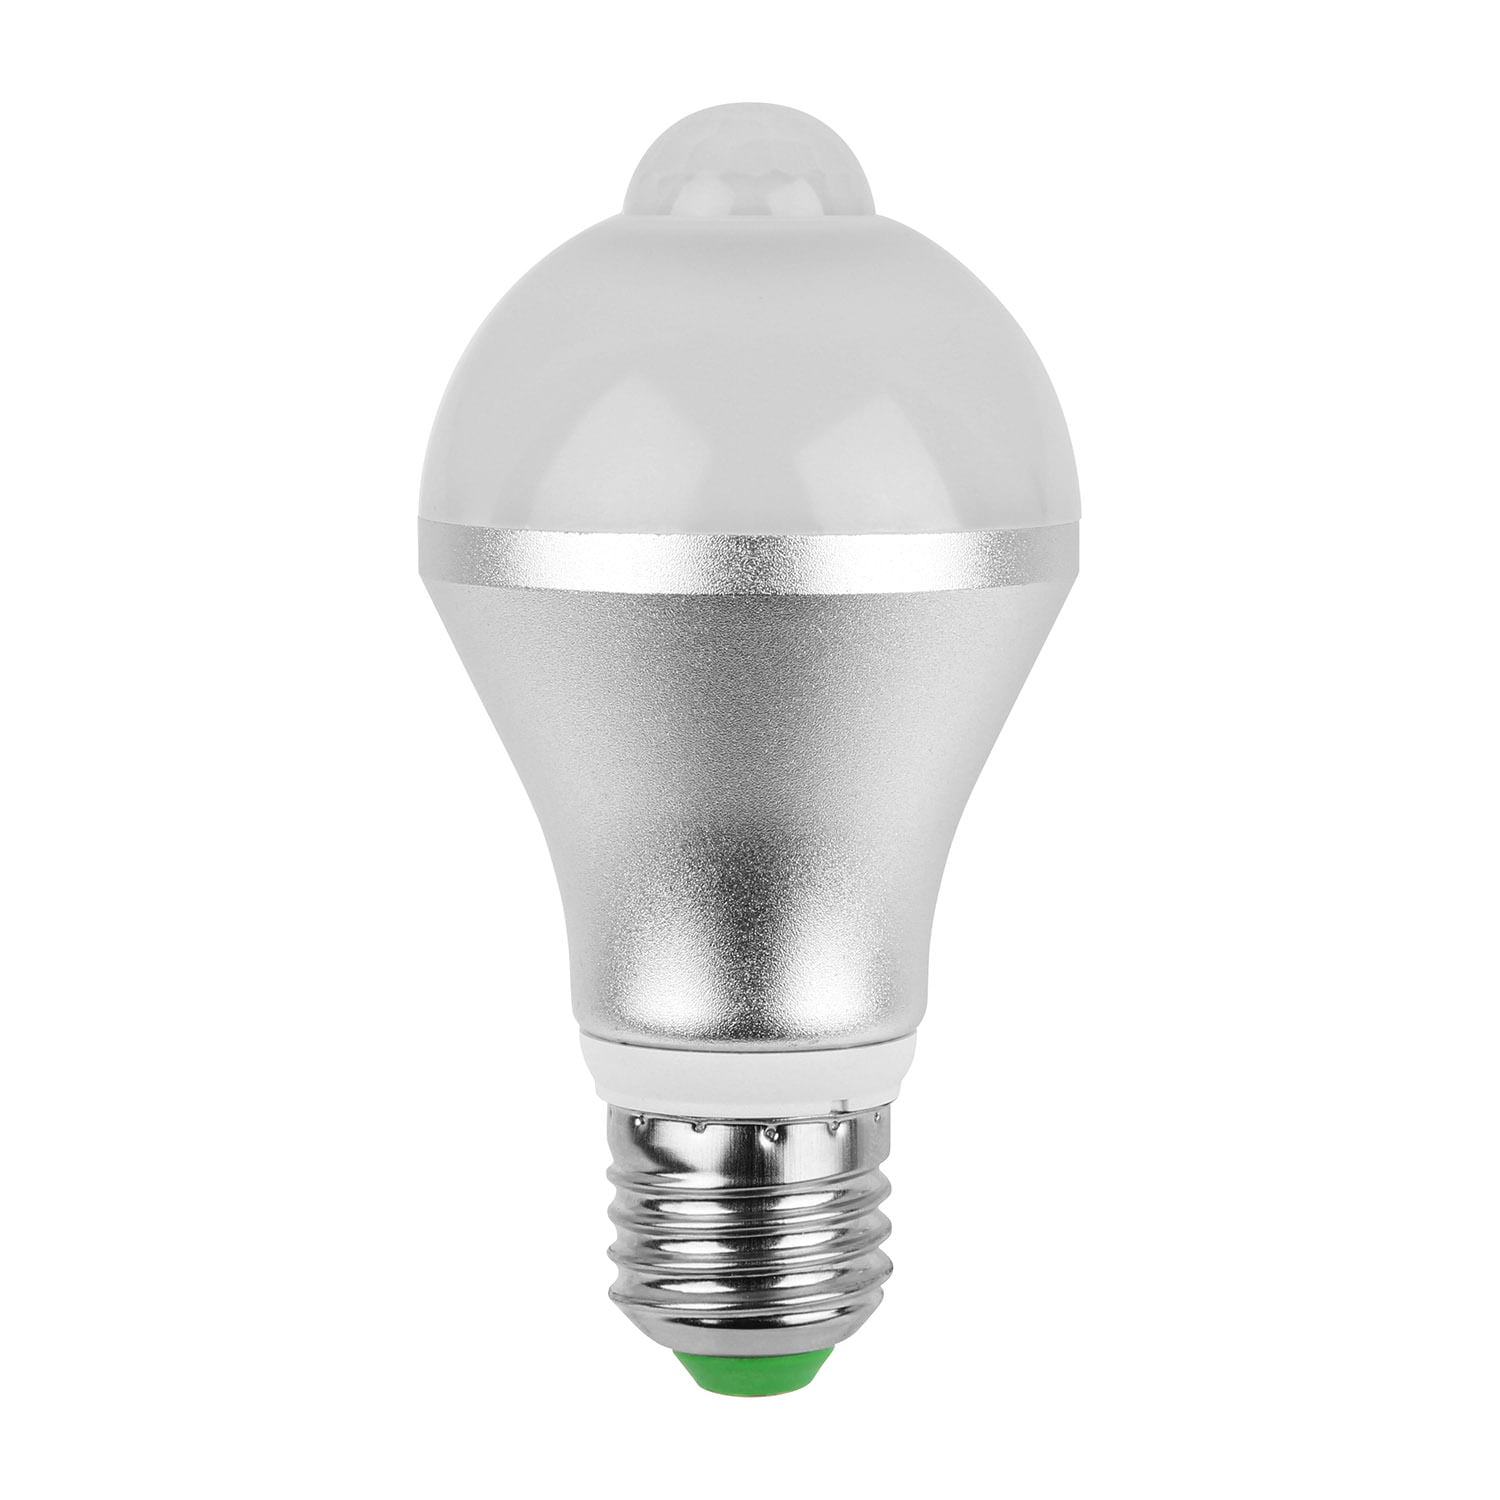 5W E27 LED PIR Motion Sensor Detection Lamp Warm/White Bulb Outdoor Night Light 